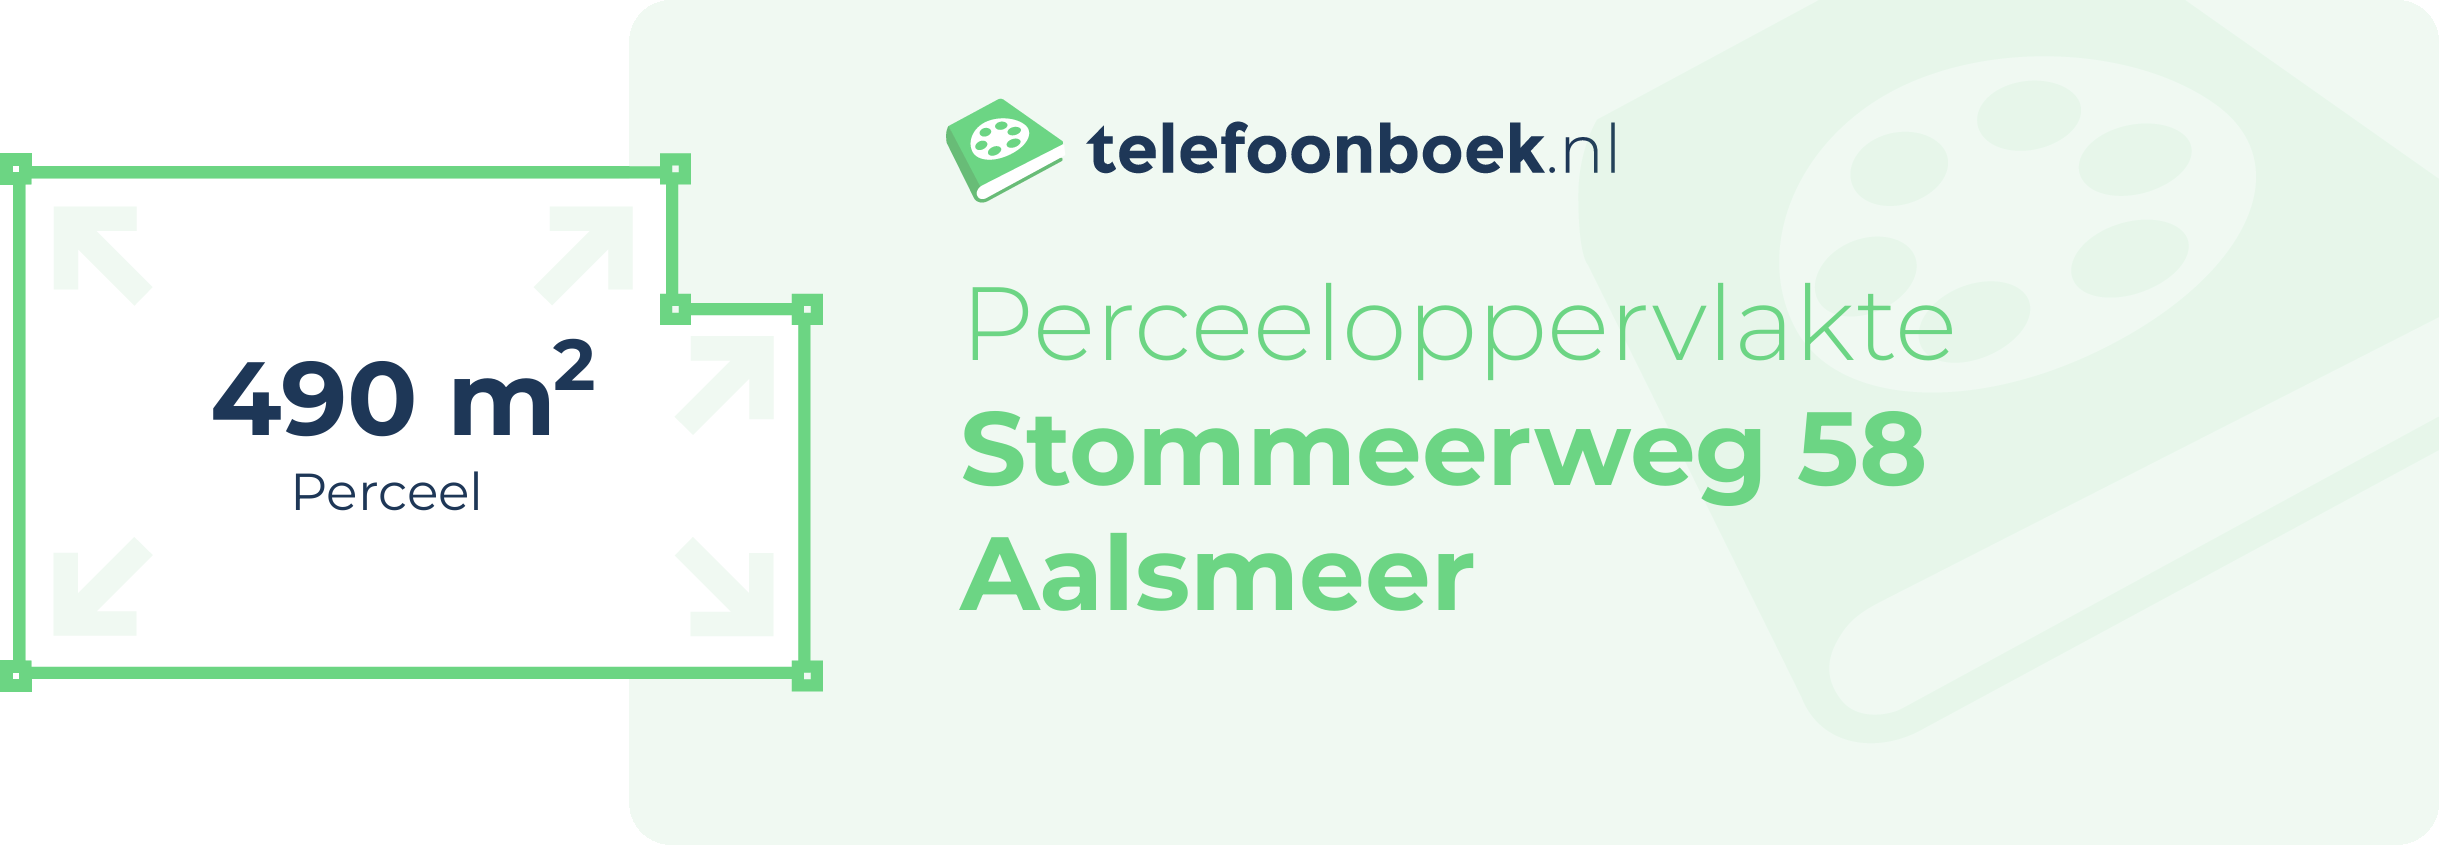 Perceeloppervlakte Stommeerweg 58 Aalsmeer